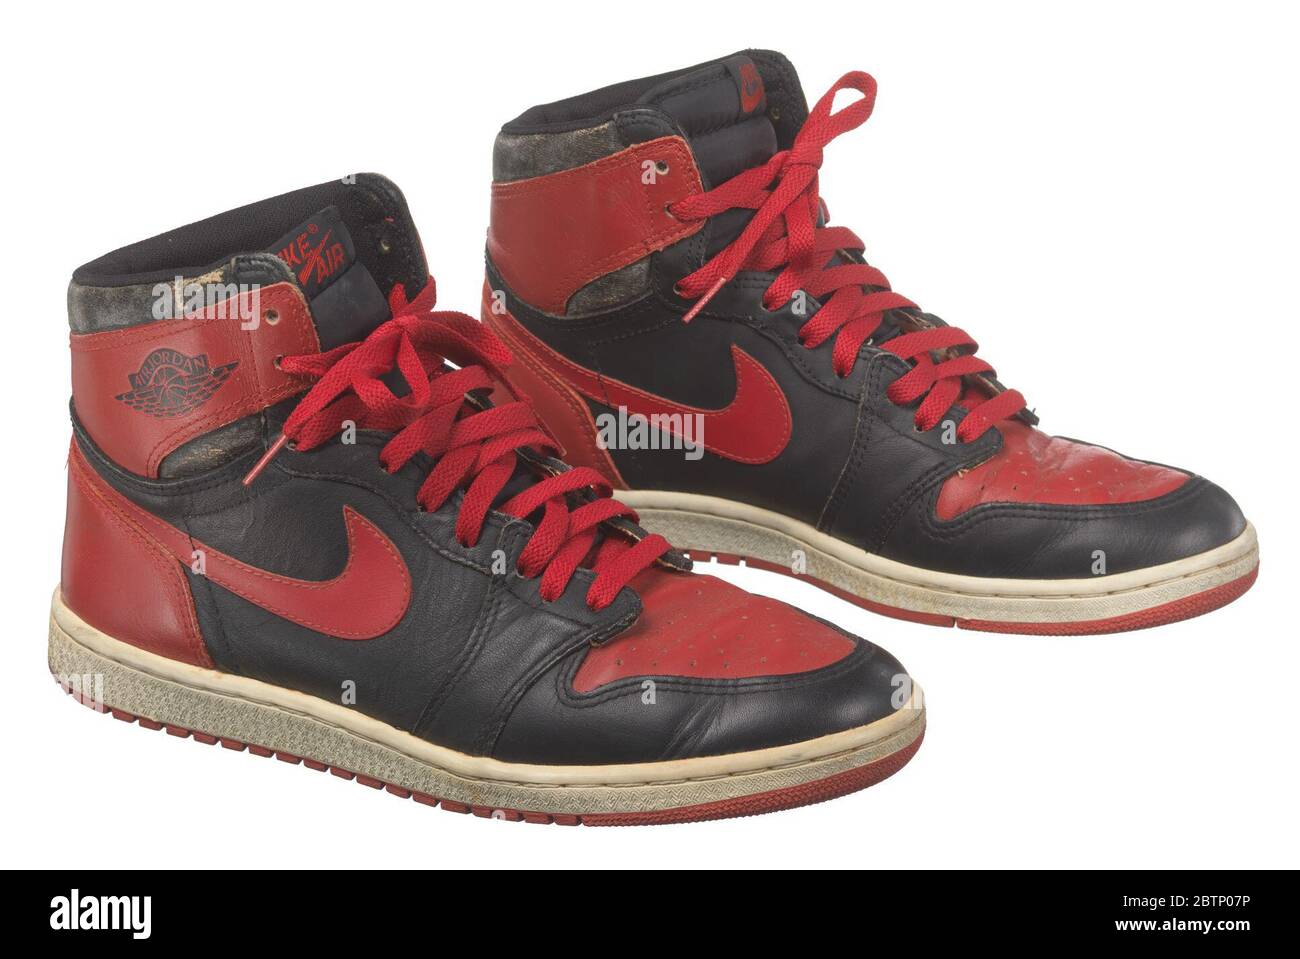 Nike nere e rosse immagini e fotografie stock ad alta risoluzione - Alamy